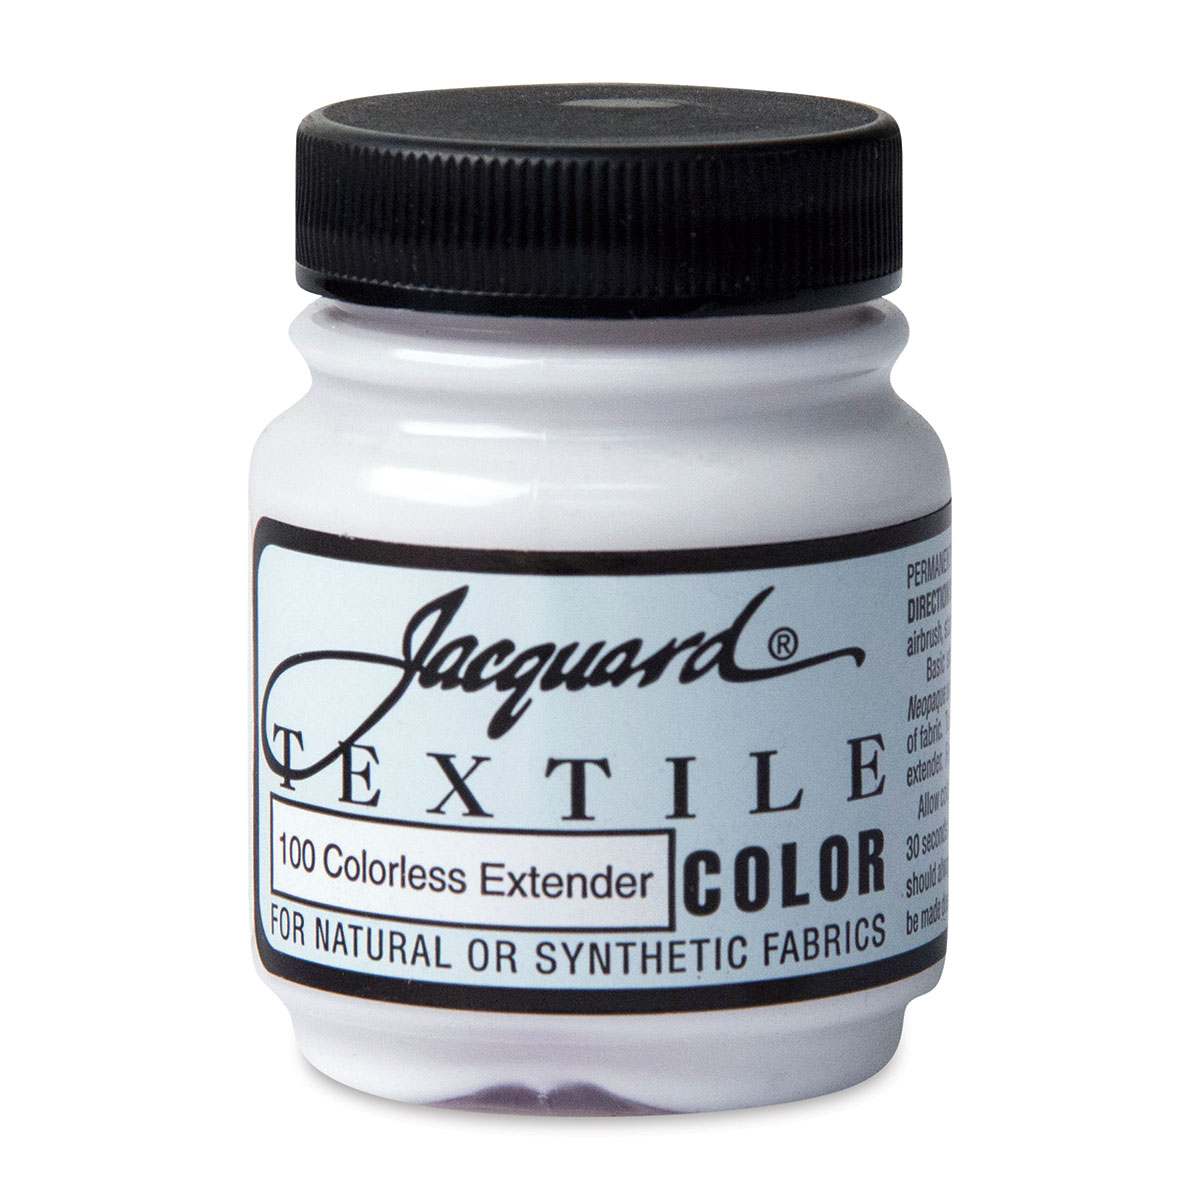 Jacquard Textile Color Fabric Paint - 1 bottle - Choose Color